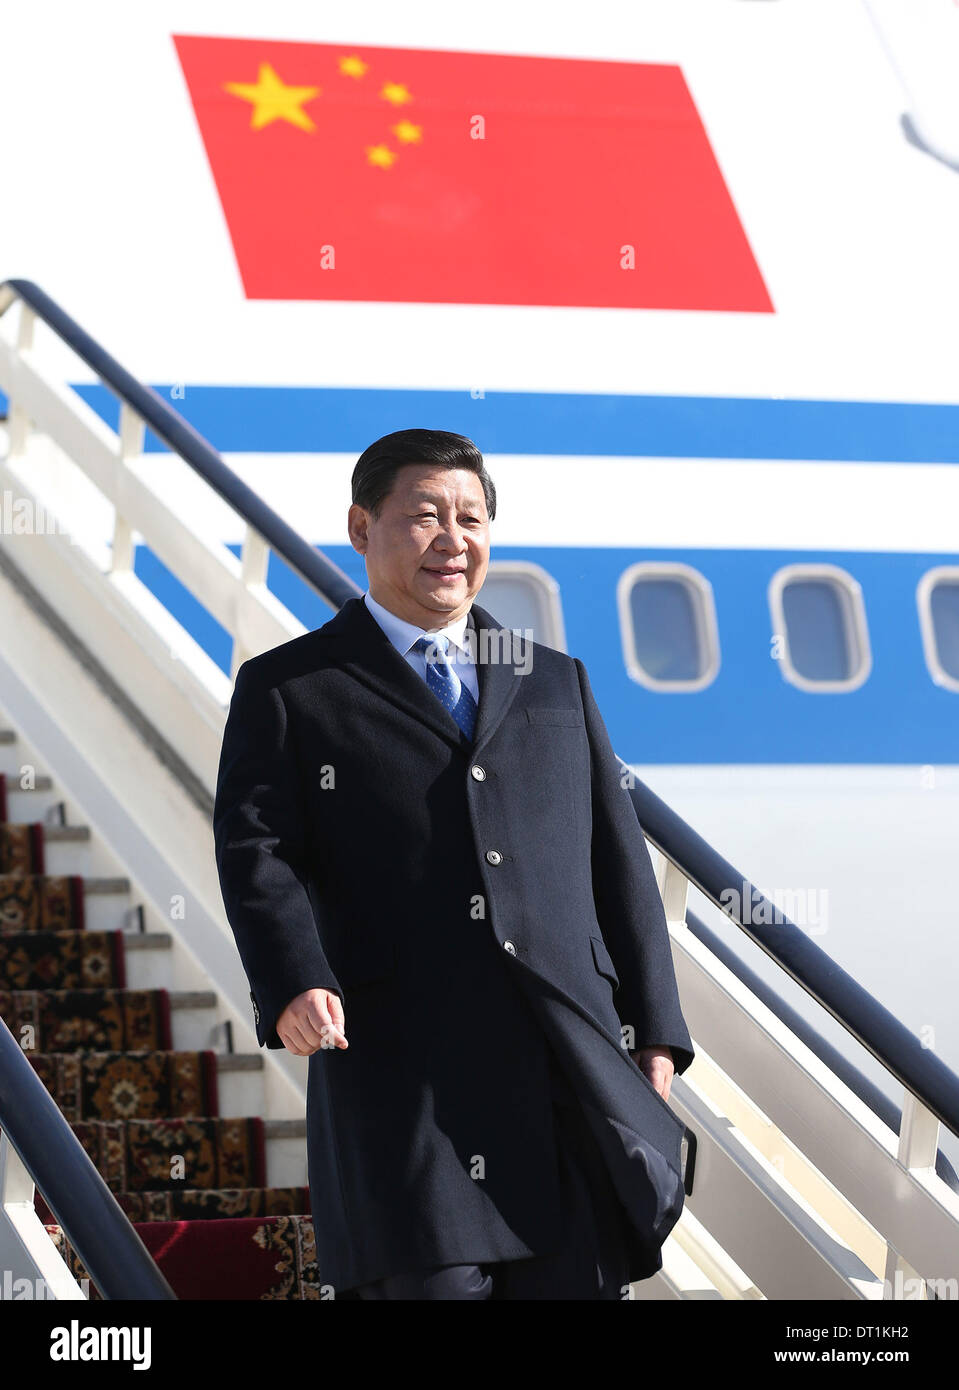 Sochi, Russie. Feb 6, 2014. Le président chinois Xi Jinping arrive à Sotchi, Russie, le 6 février 2014. Xi prendra part à la cérémonie d'ouverture de la 22e Jeux Olympiques d'ici, à l'invitation du Président russe Vladimir Poutine. Ce sera la première participation d'un chef d'État chinois à la cérémonie d'ouverture d'un grand événement sportif à l'étranger. Credit : Lan Hongguang/Xinhua/Alamy Live News Banque D'Images